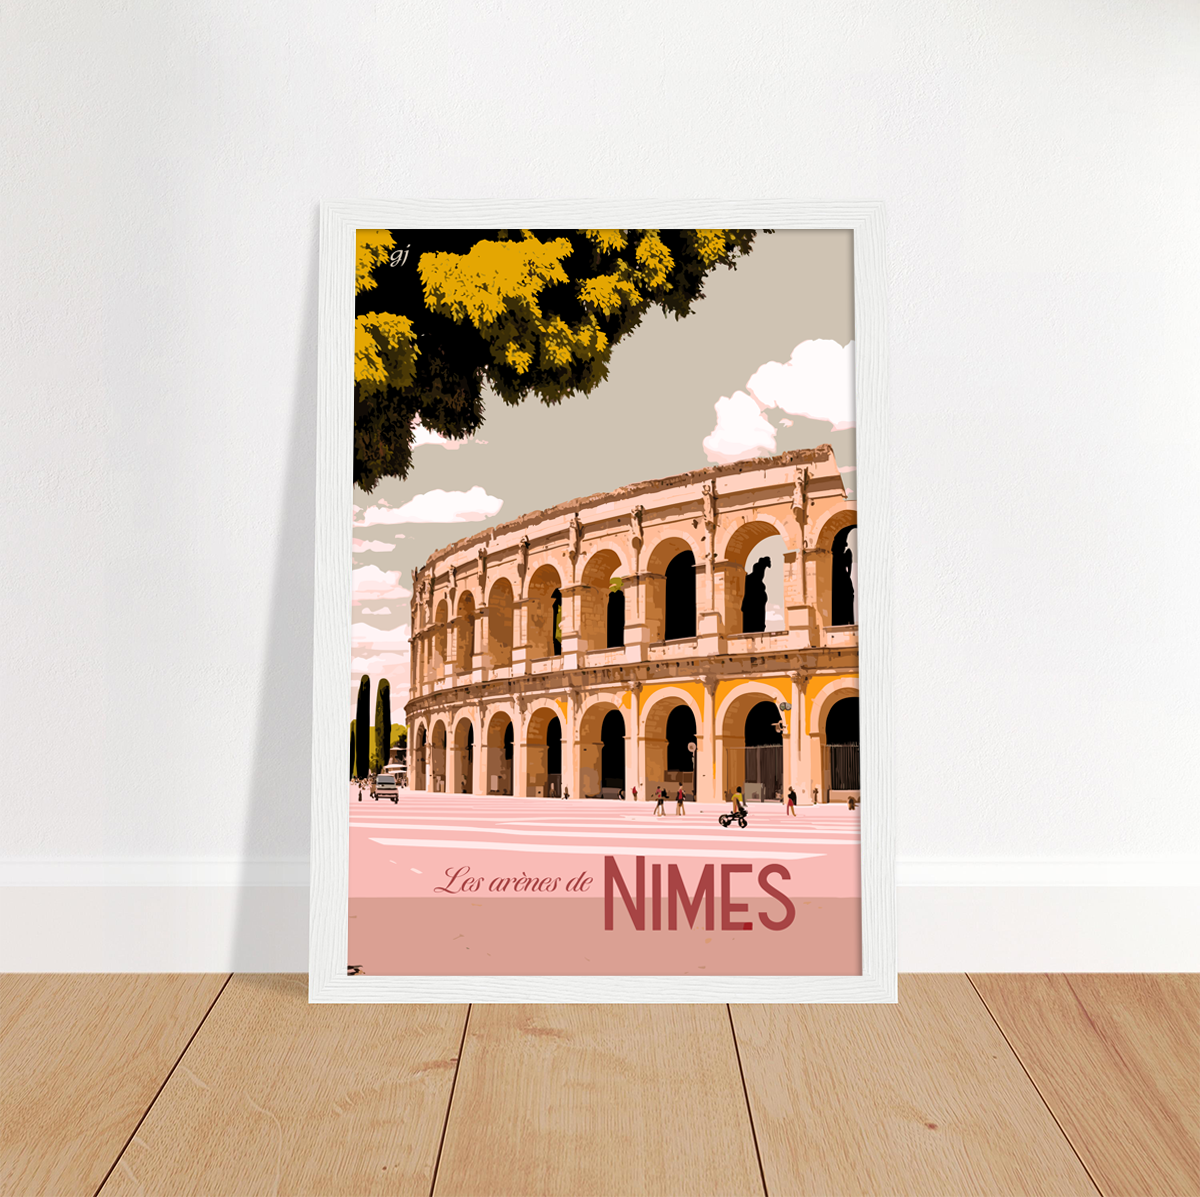 Nimes poster by bon voyage design